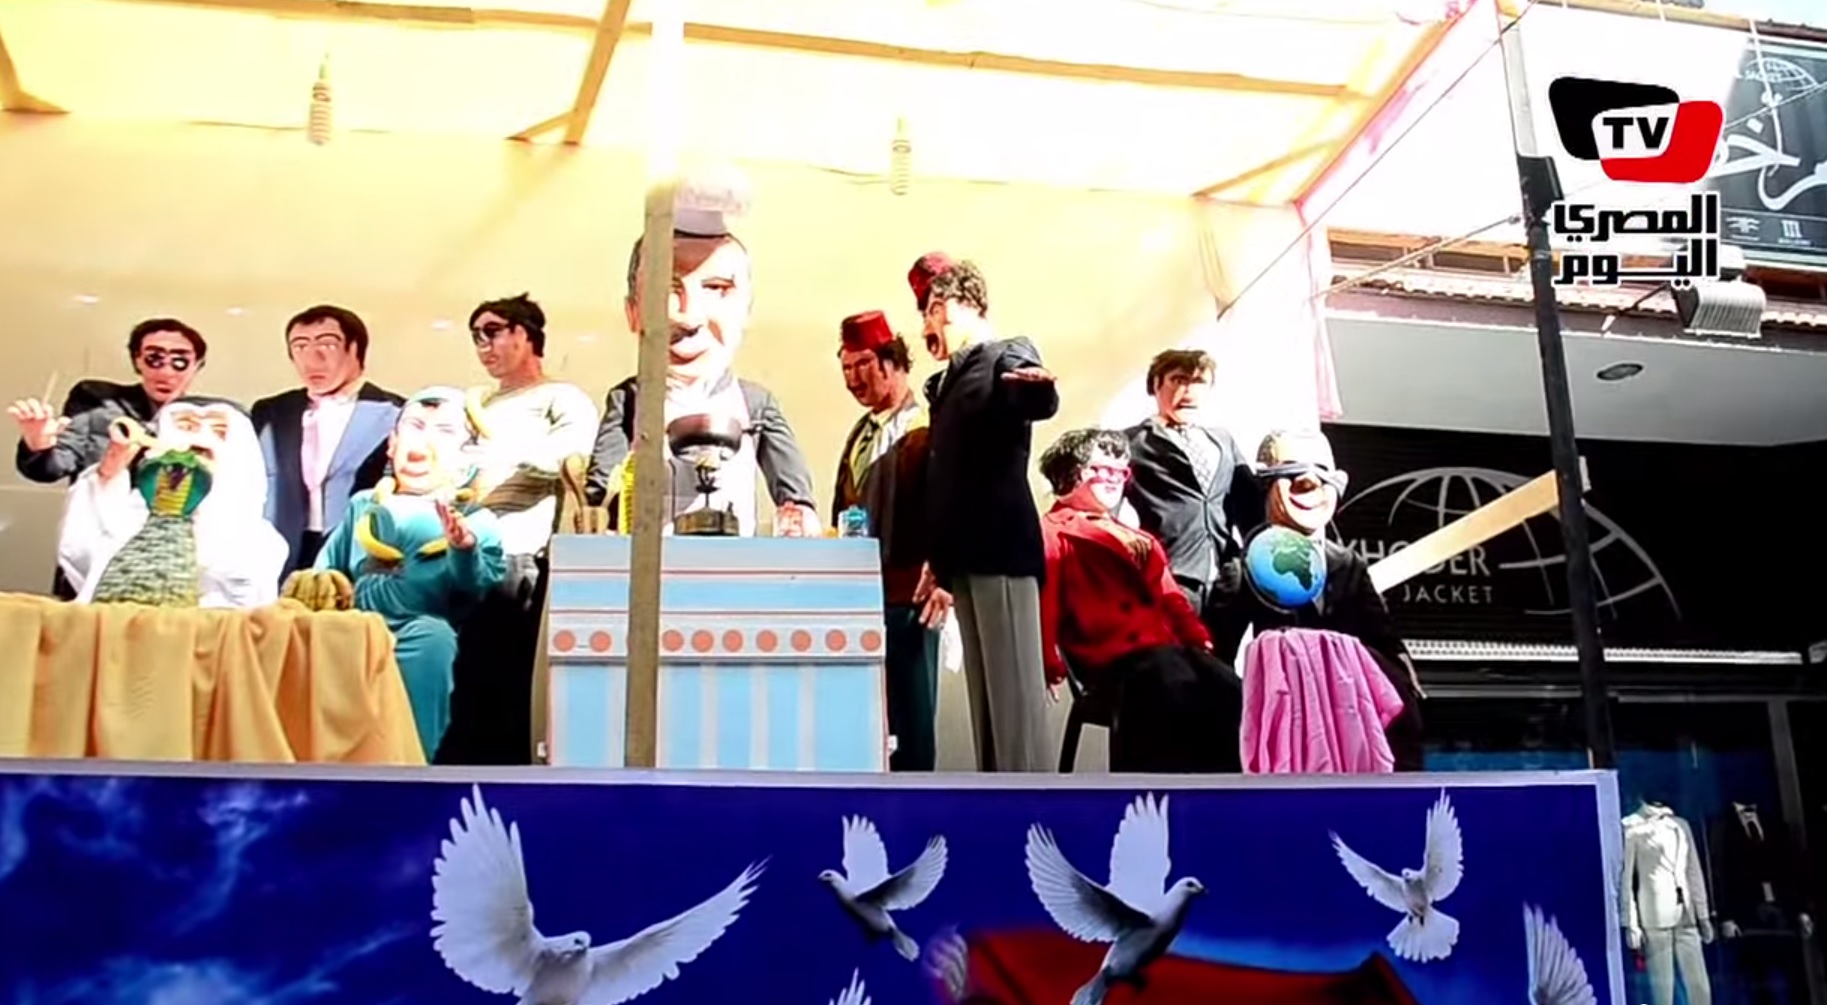 בובות בקרנבל אלנבי בפורט סעיד (צילום מסך: יוטיוב)